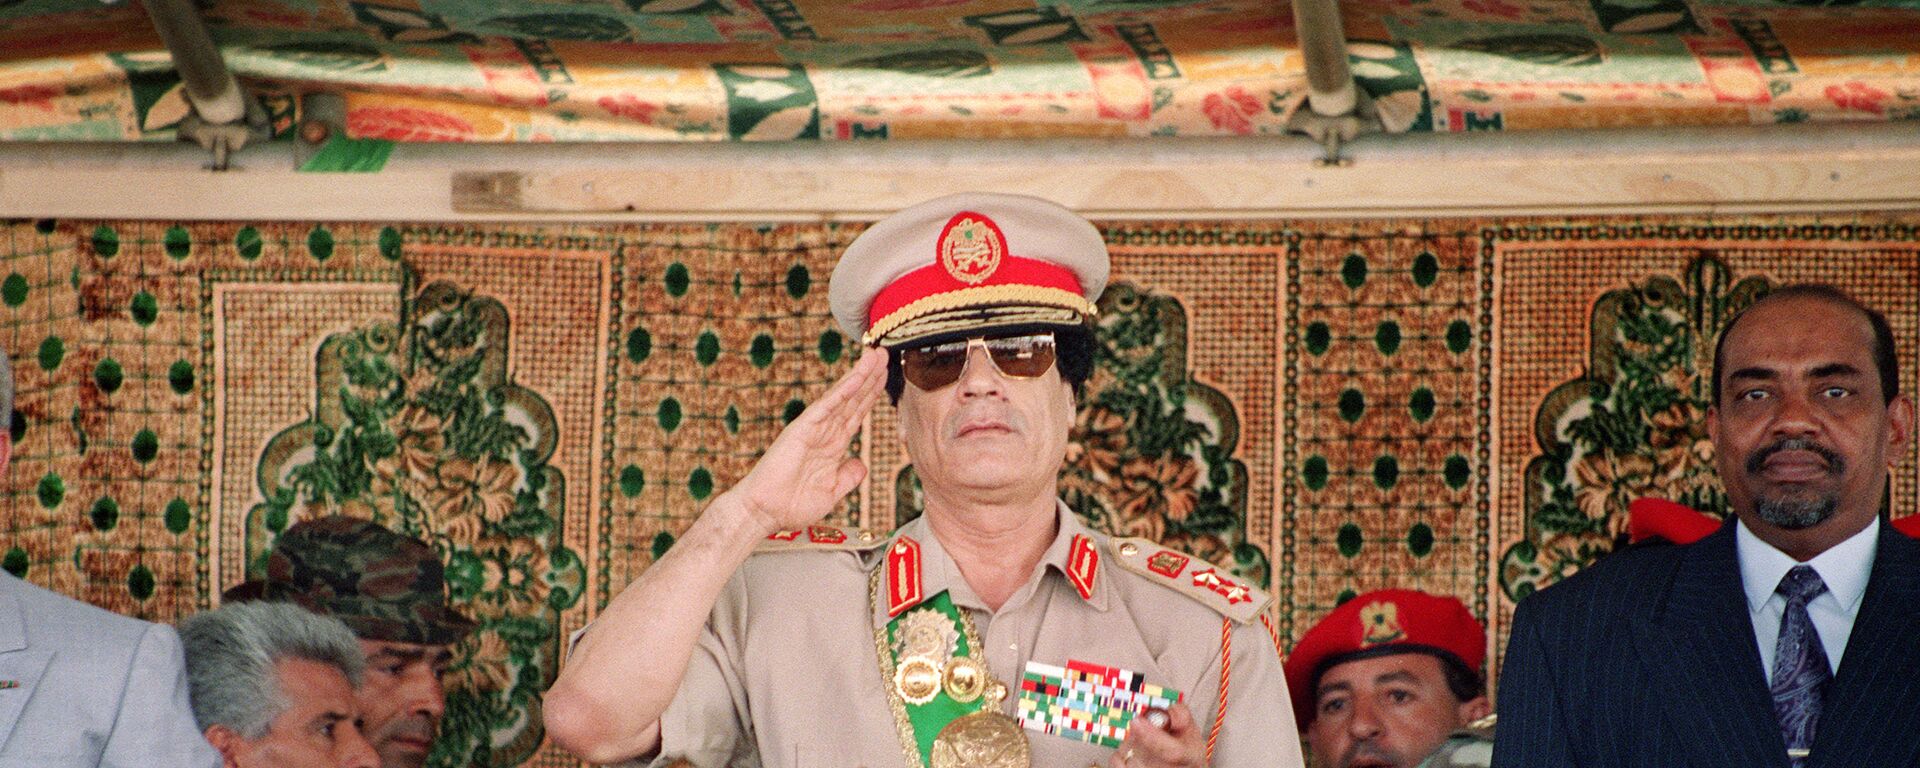 Lider Livii Muammar Kaddafi na voennom parade v čestь 25-letiя ego prihoda k vlasti v Tripoli, 1994 god - Sputnik Srbija, 1920, 24.10.2021